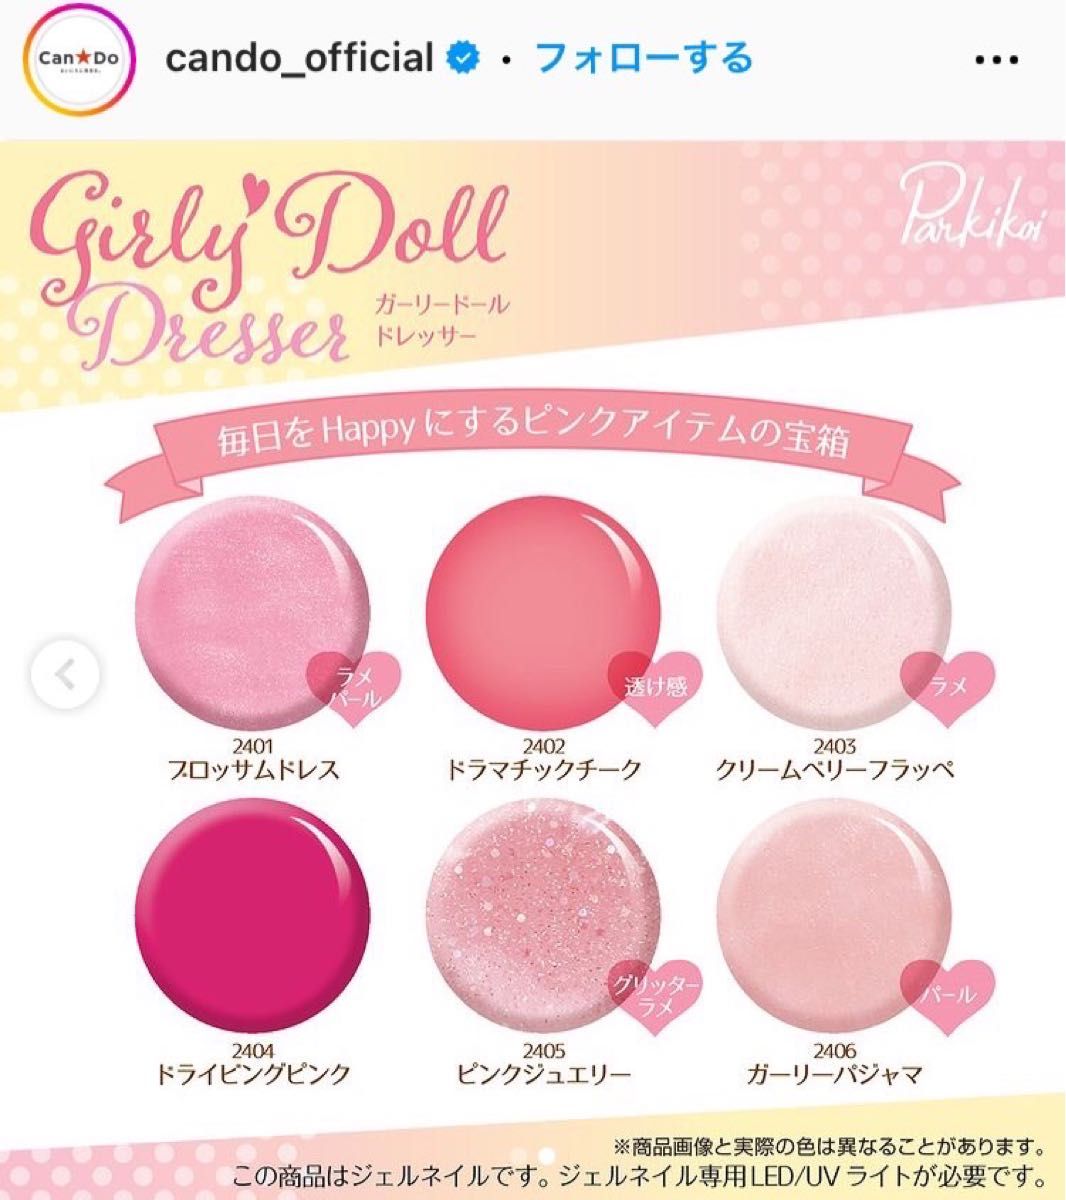 最新 キャンドゥ 新色 ピンク ラメ ジェルネイル 6本 ガーリードール pink 透け感 パール